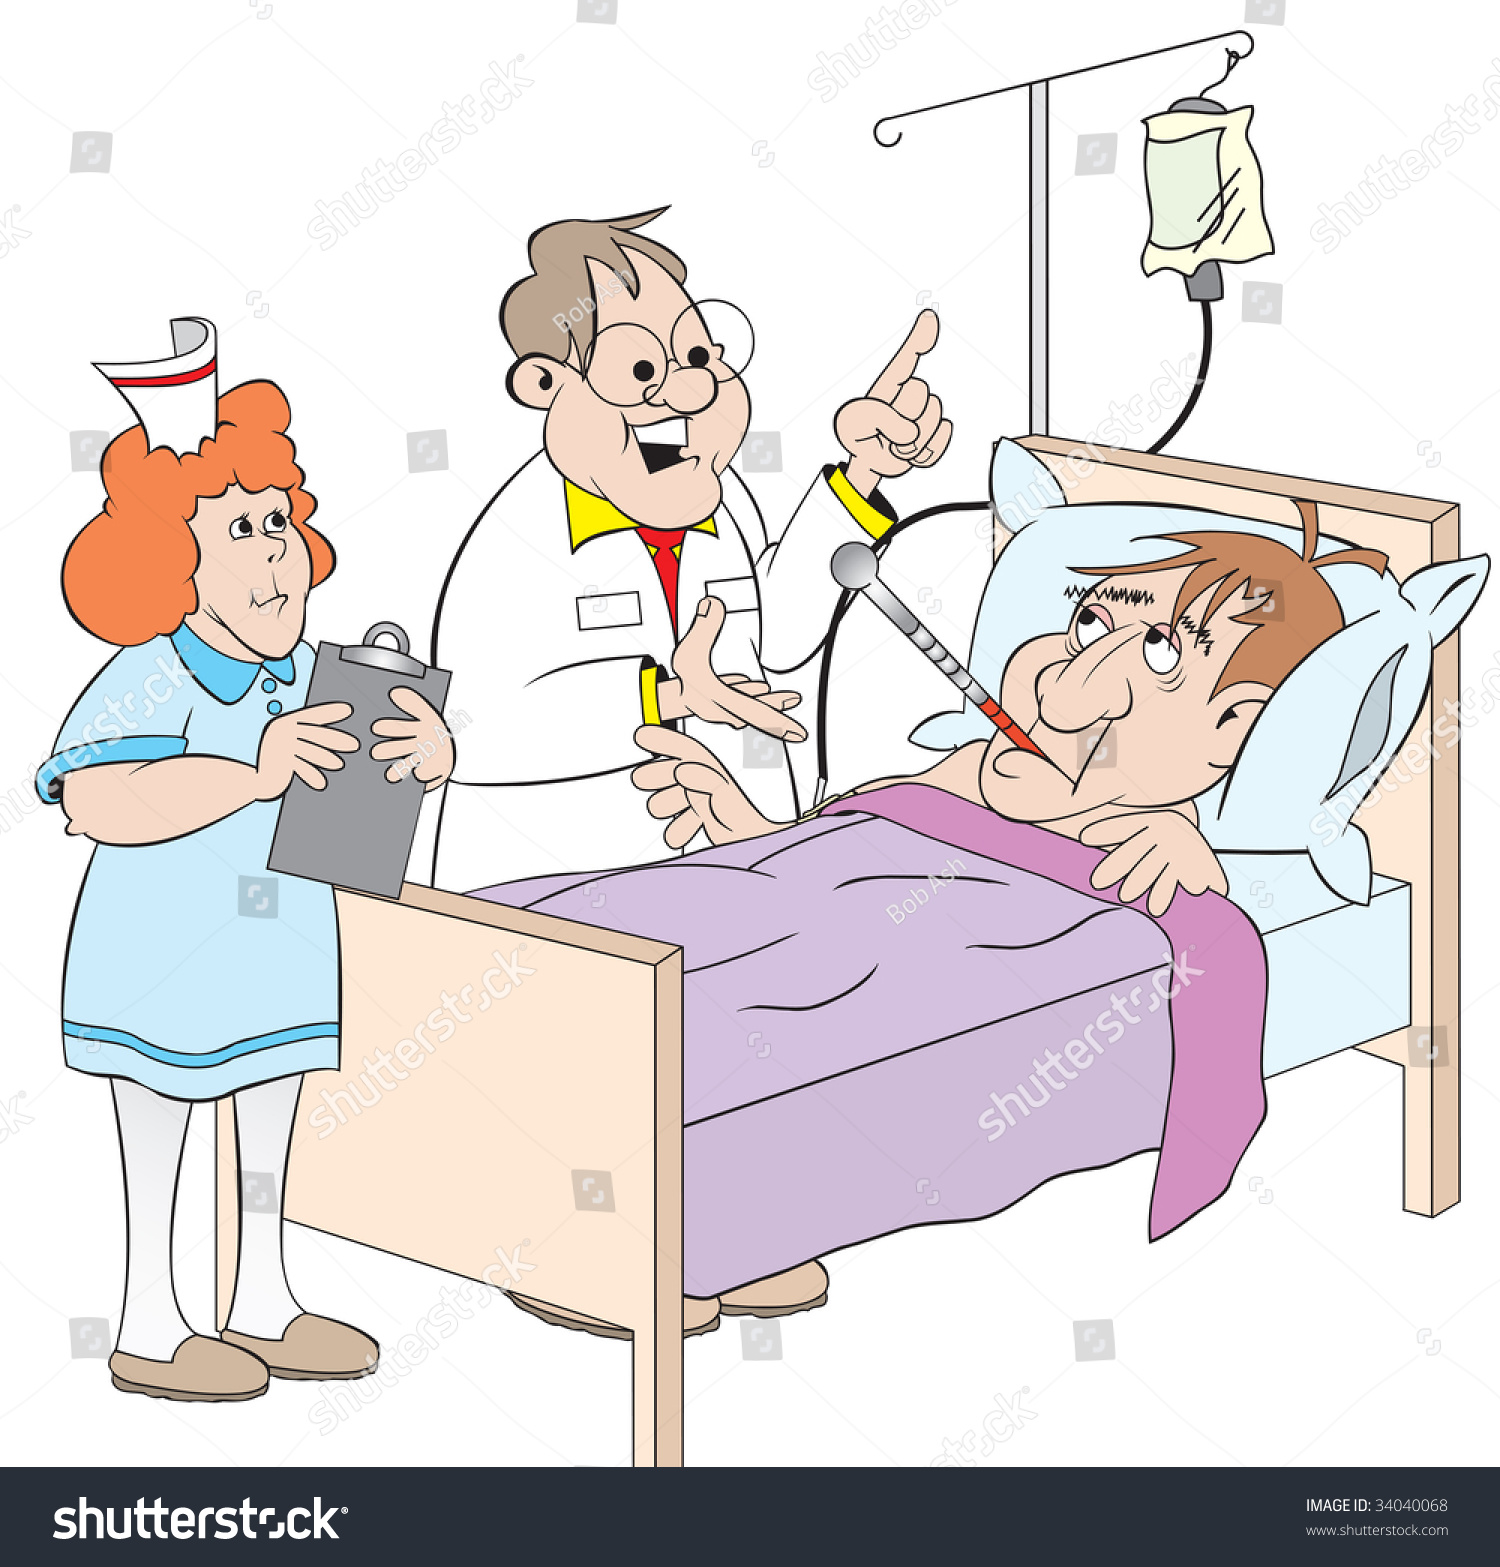 Cartoon Art Patient Hospital Bed Has Stock Illustration 34040068 ...